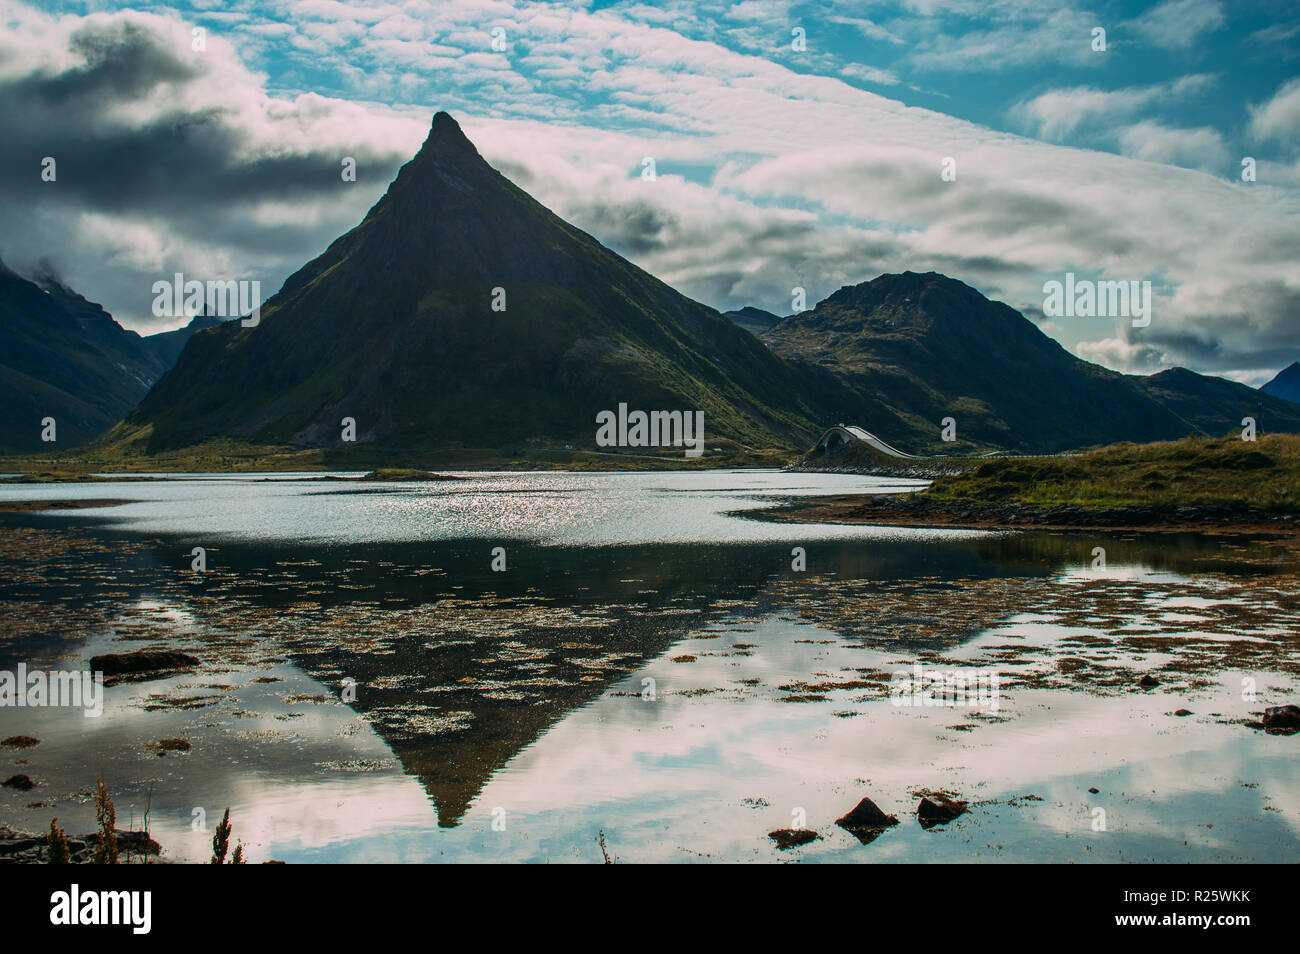 Peak Mountain mit Reflexion, Brücke auf dem Hintergrund, Lofoten, Norwegen Stockfoto